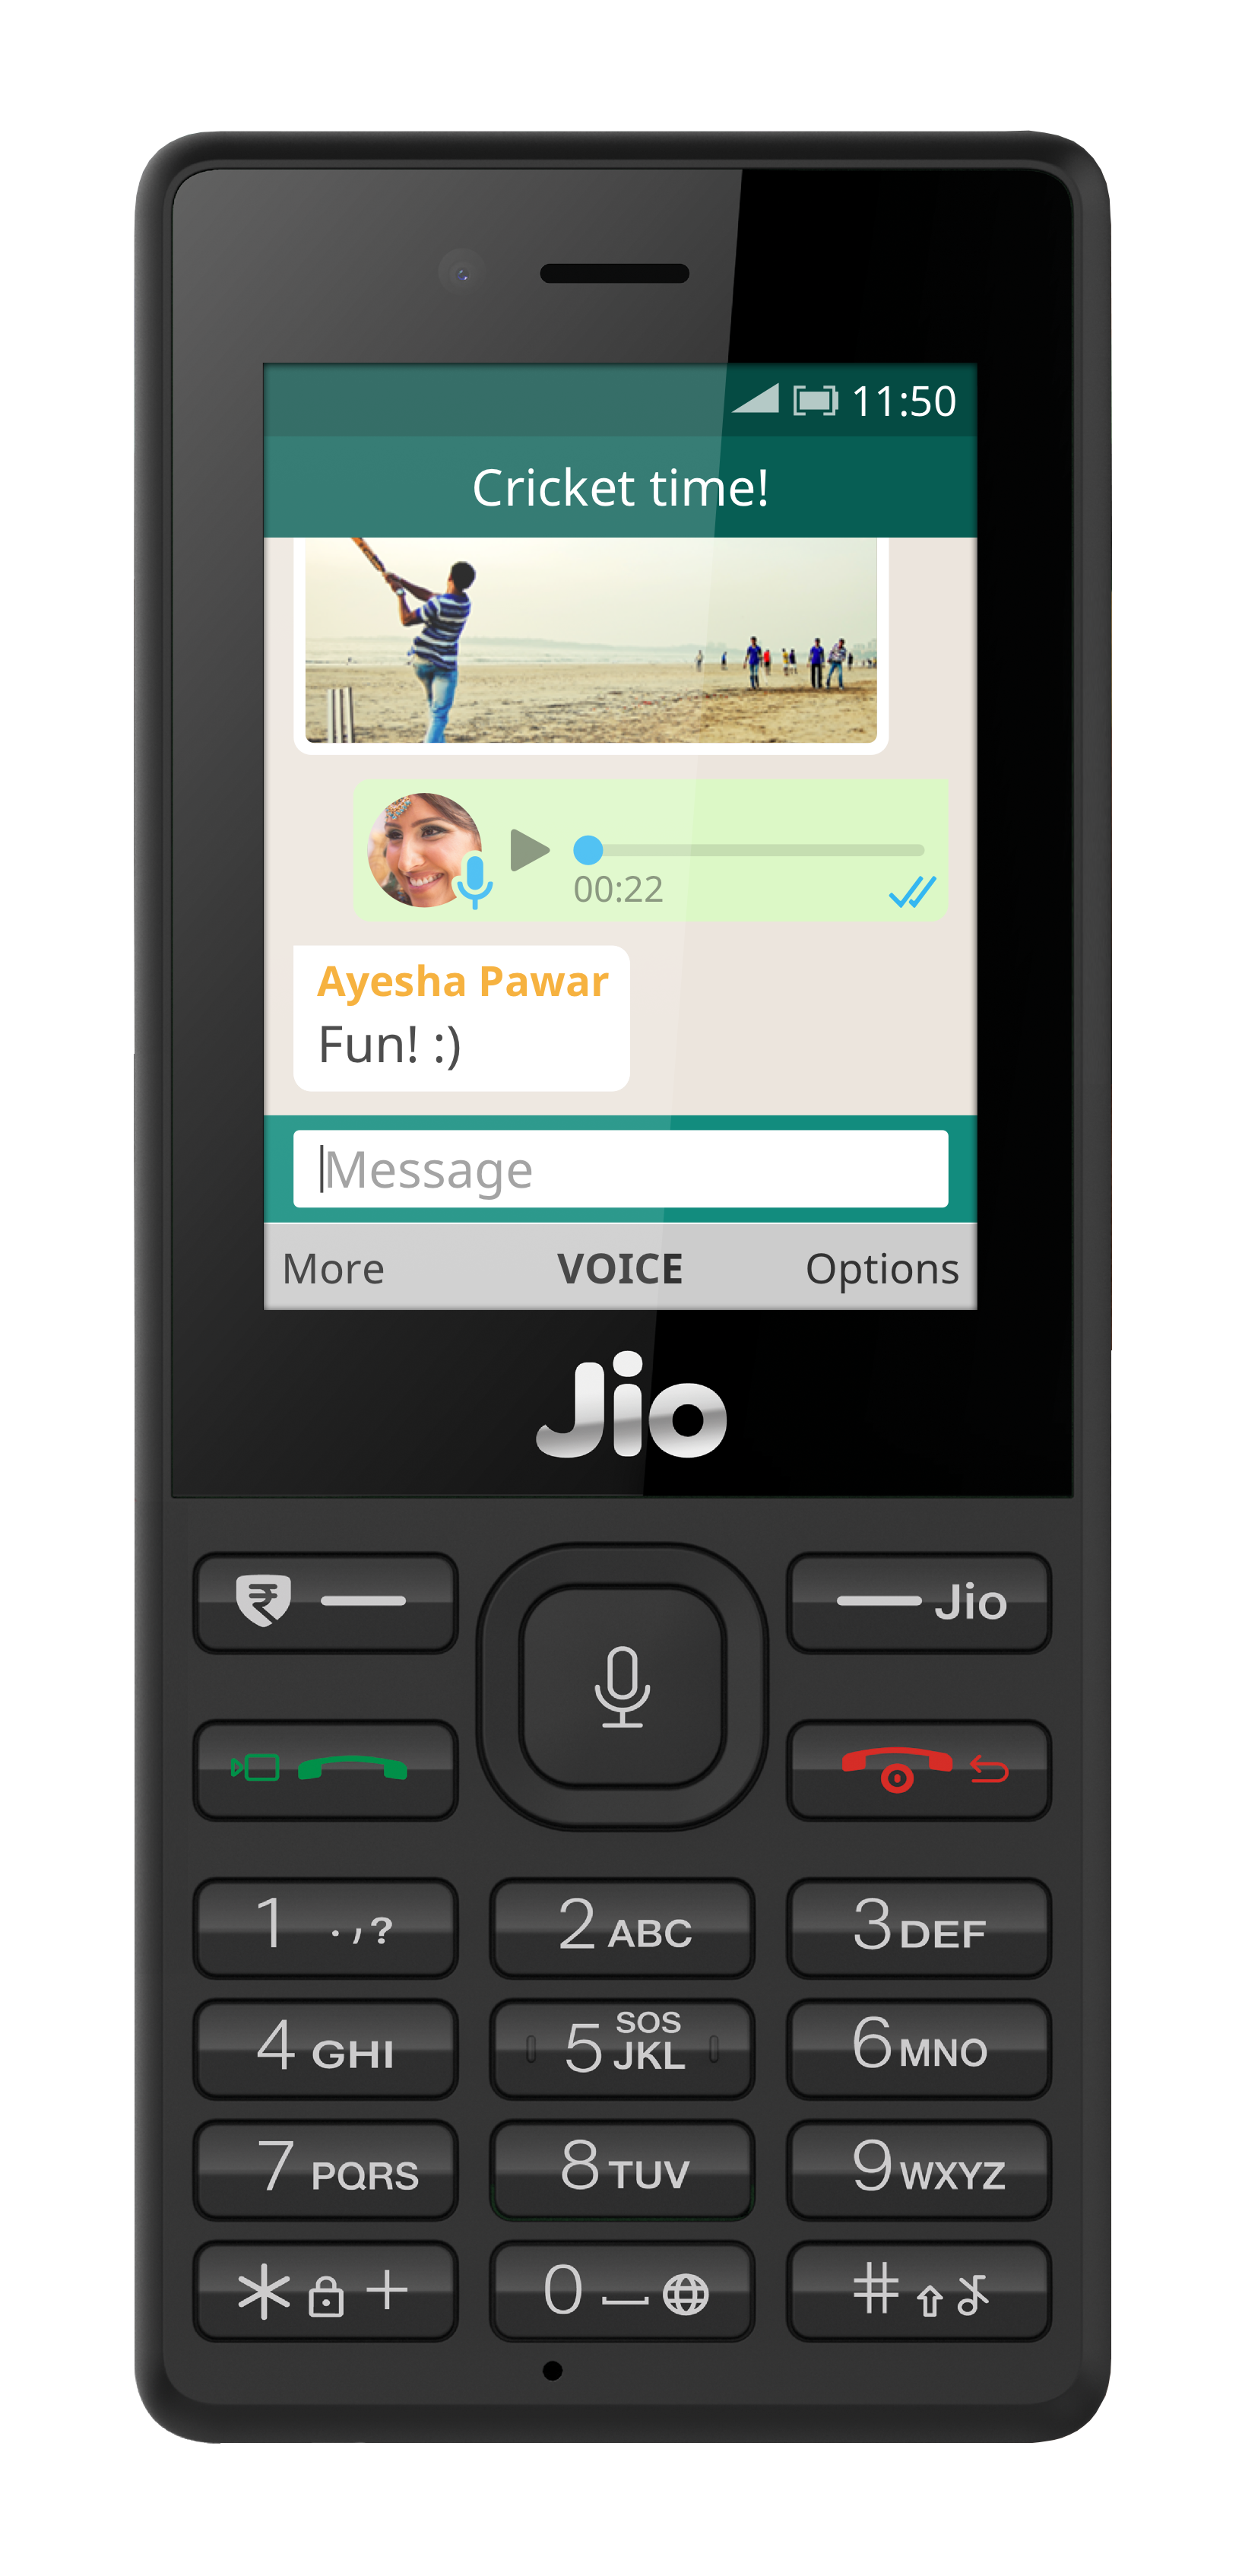 fingerprint lock app download for jio phone